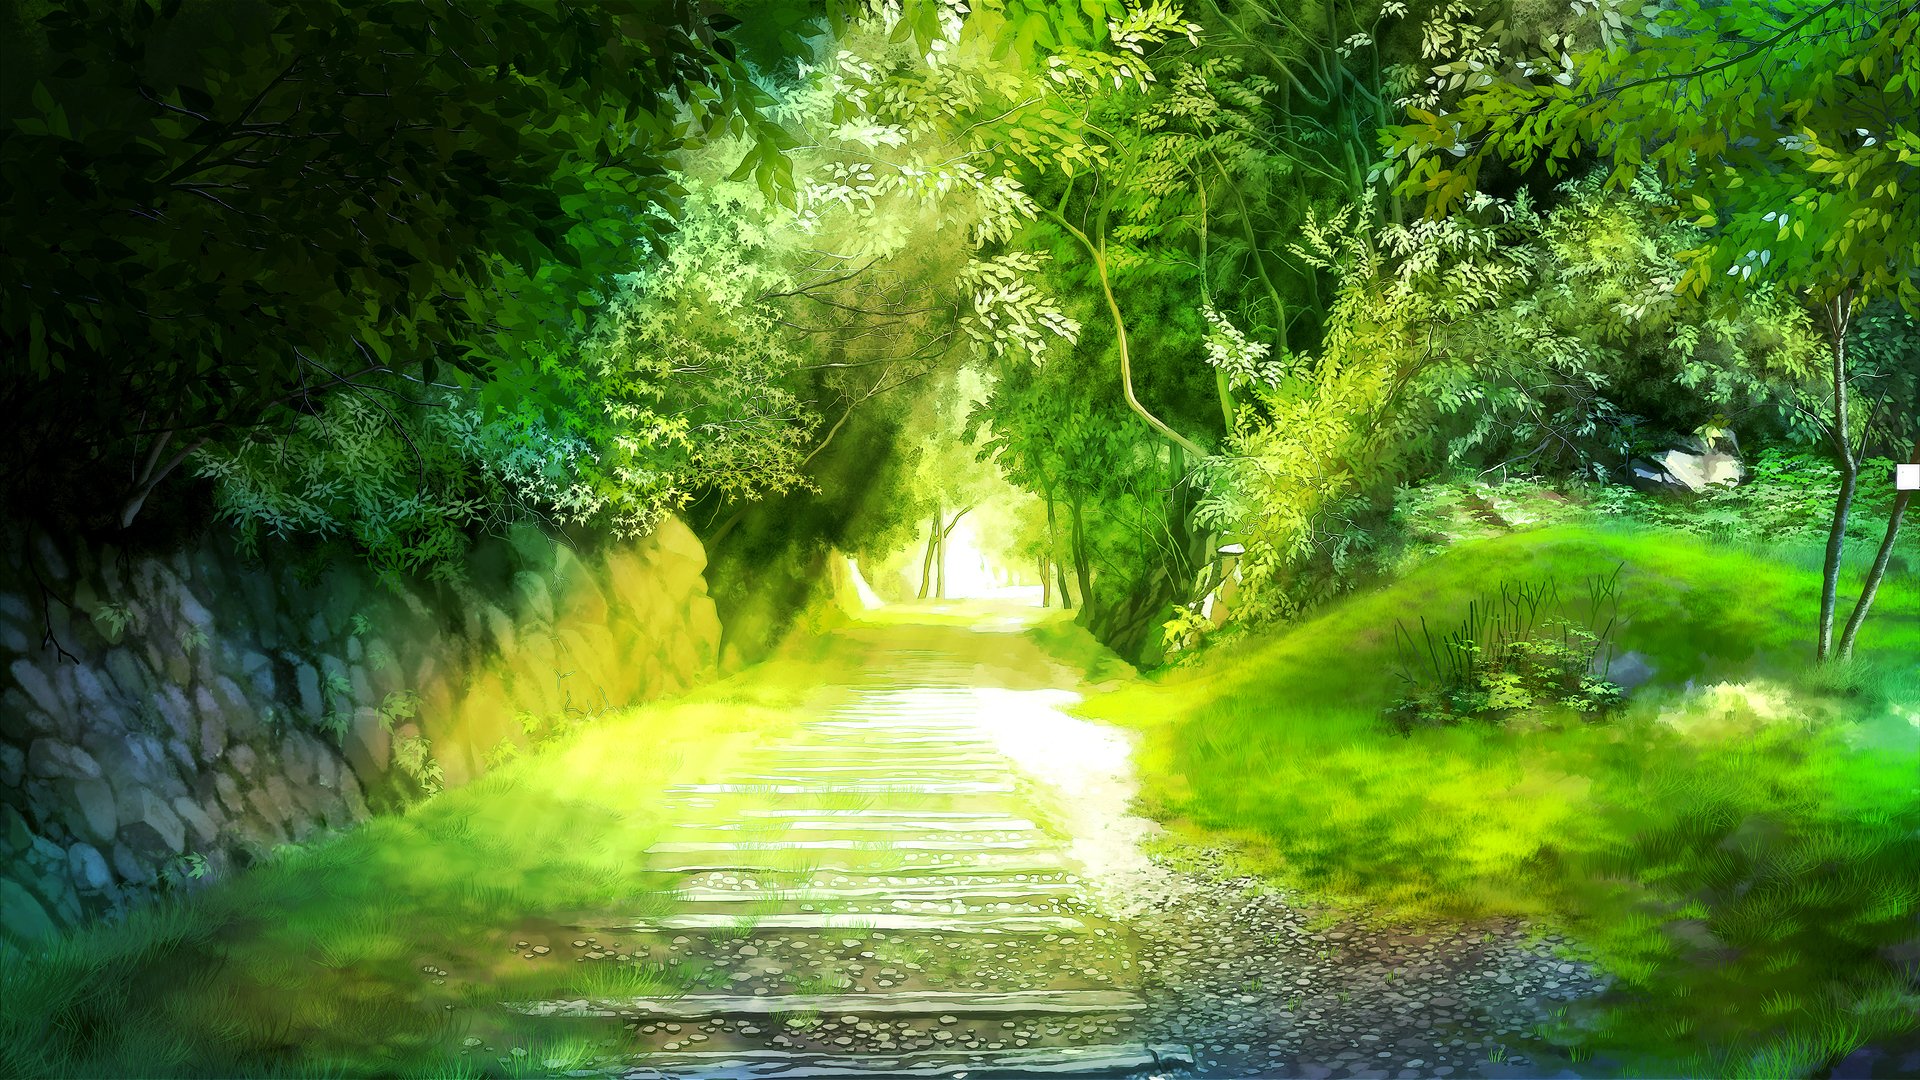 Обои с тегом:miyukin, окура миюки, пейзаж, аллея, дорожка, деревья, зелень.